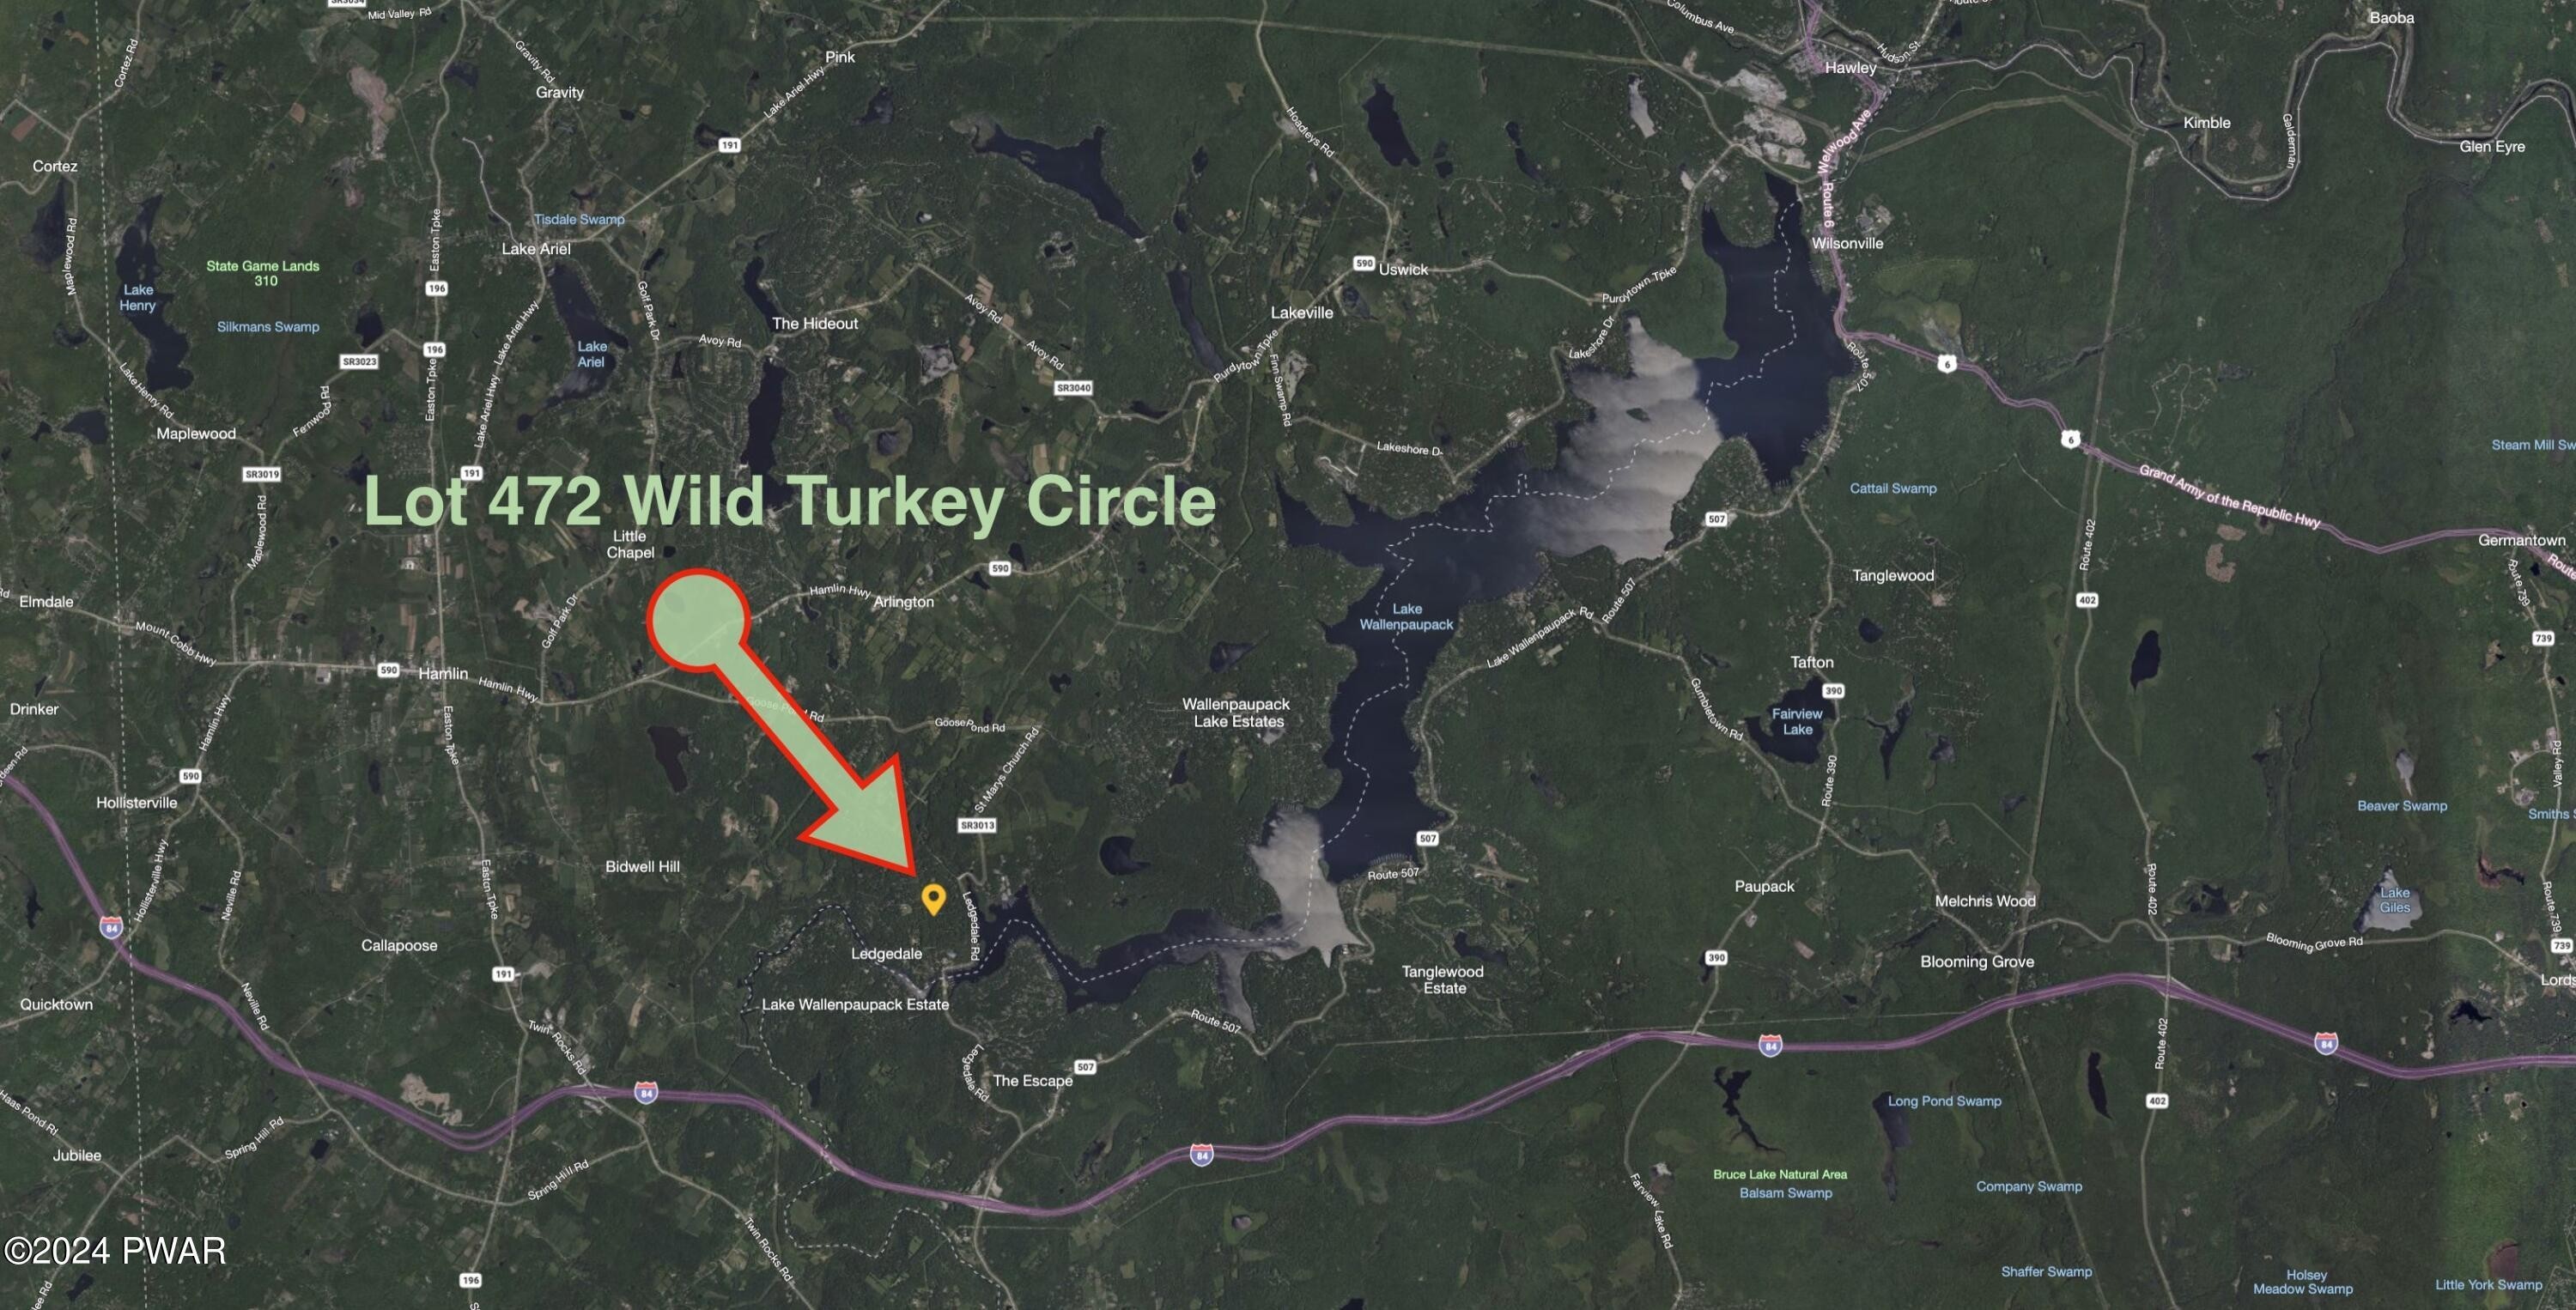 3. 472 Wild Turkey Circle